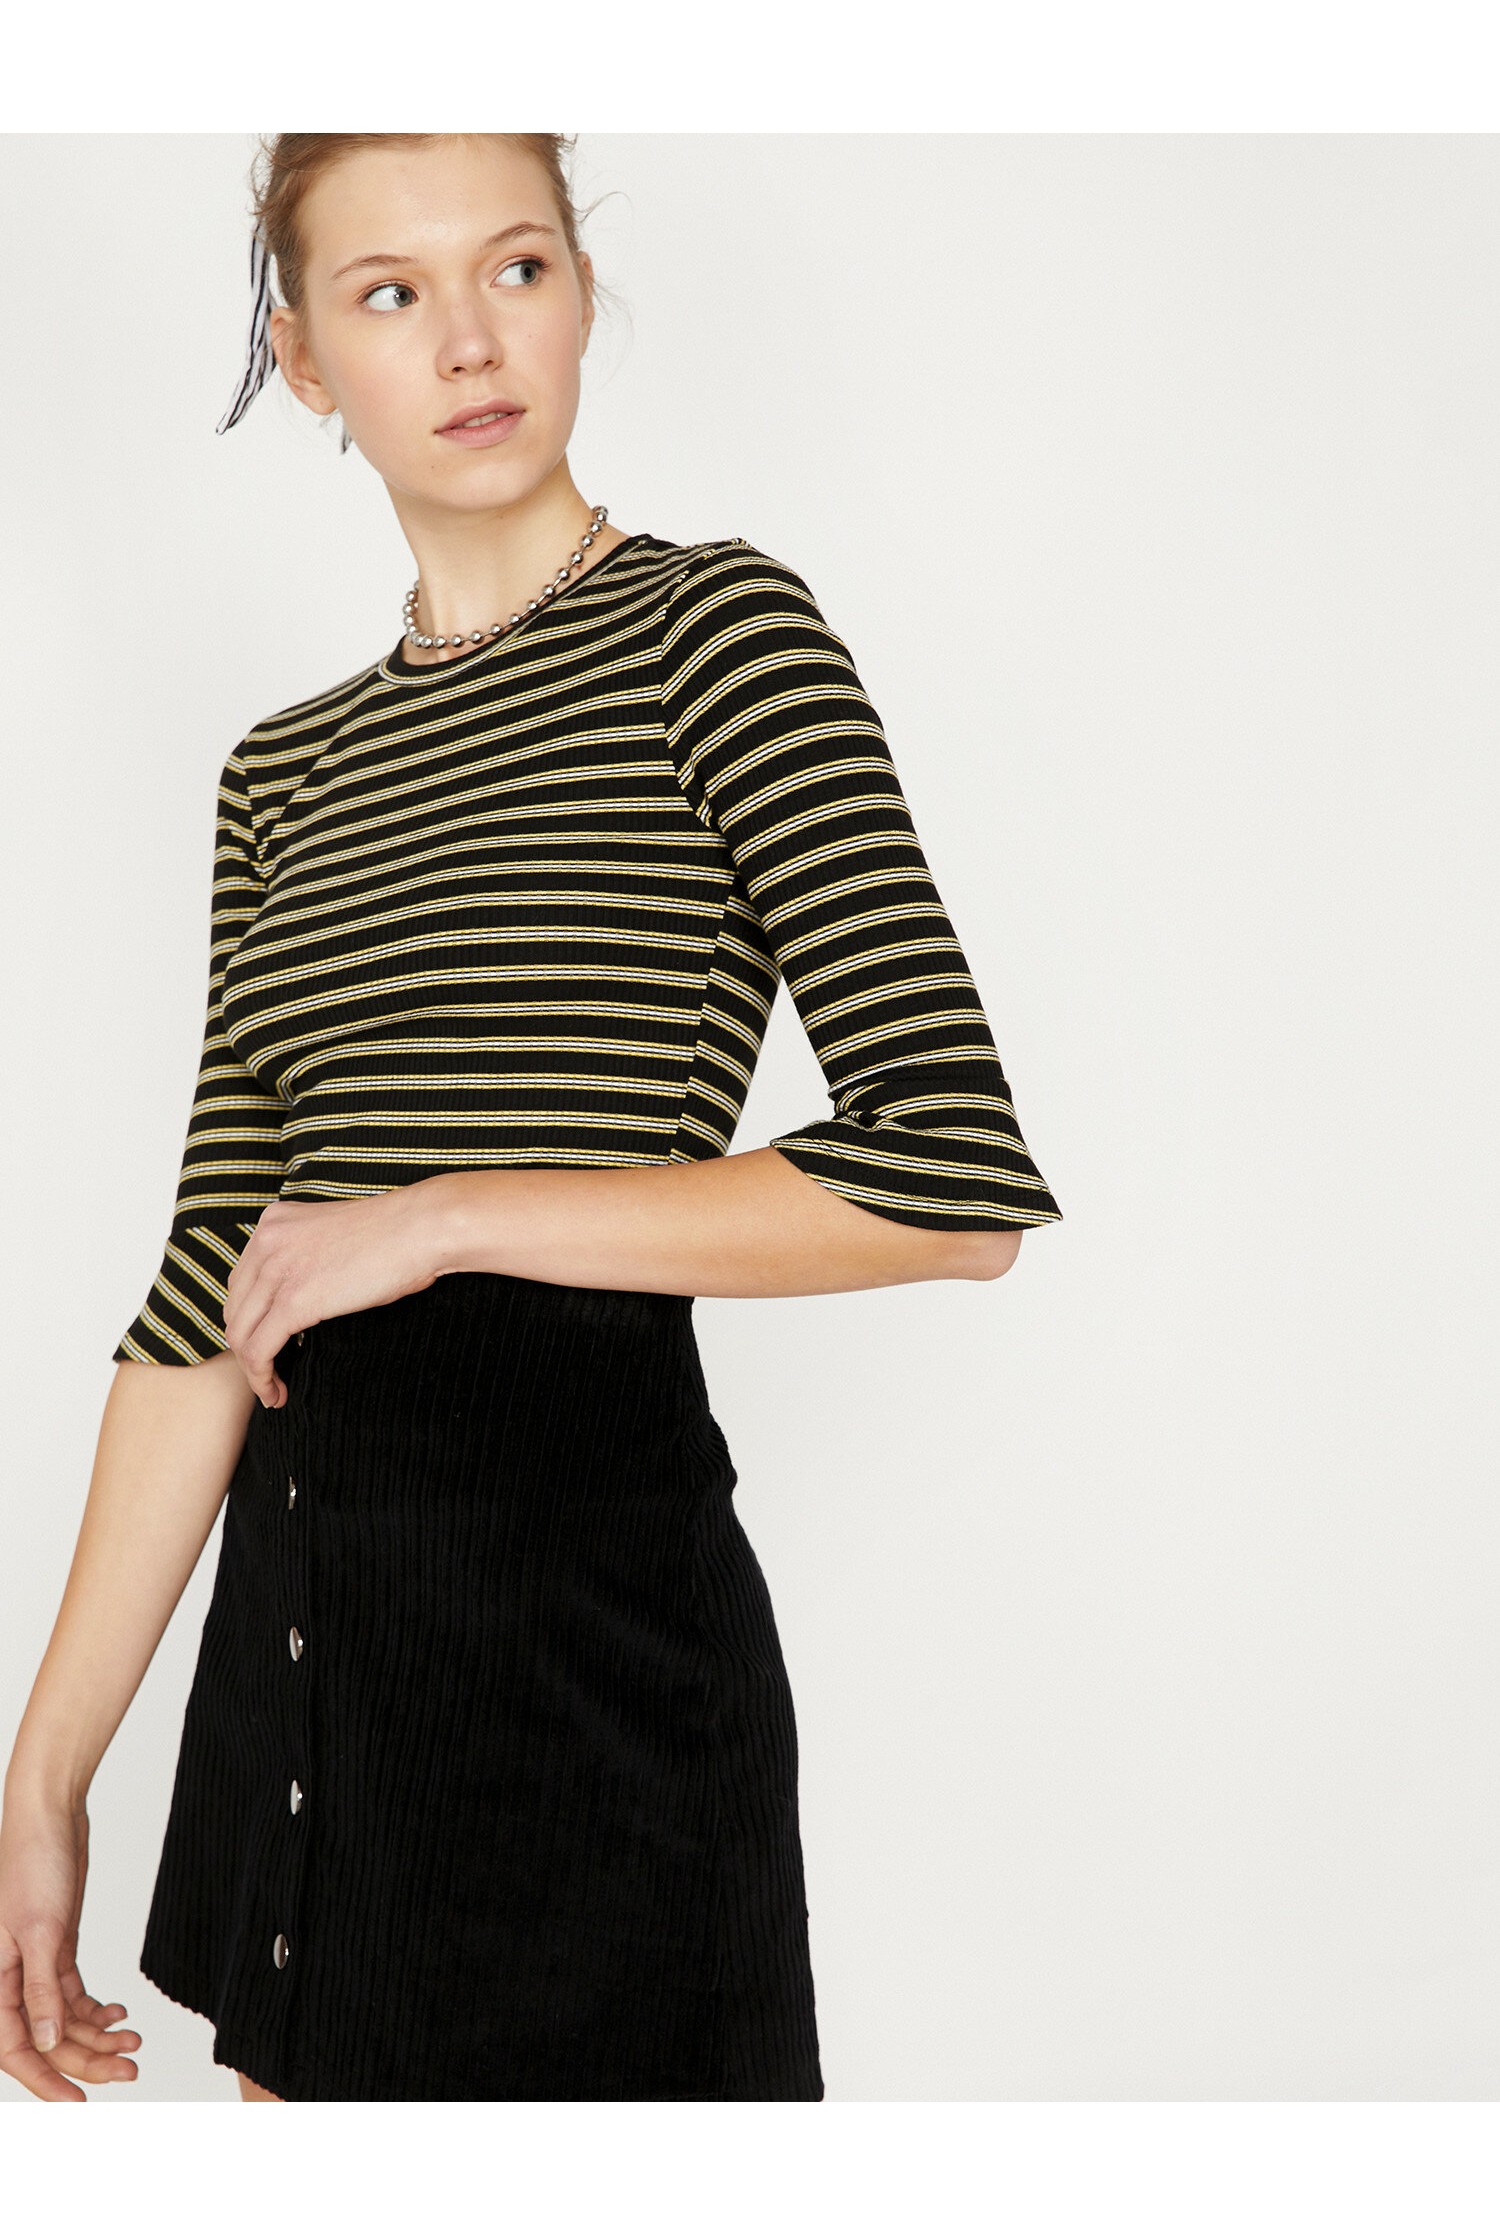 Olive striped koton blouse